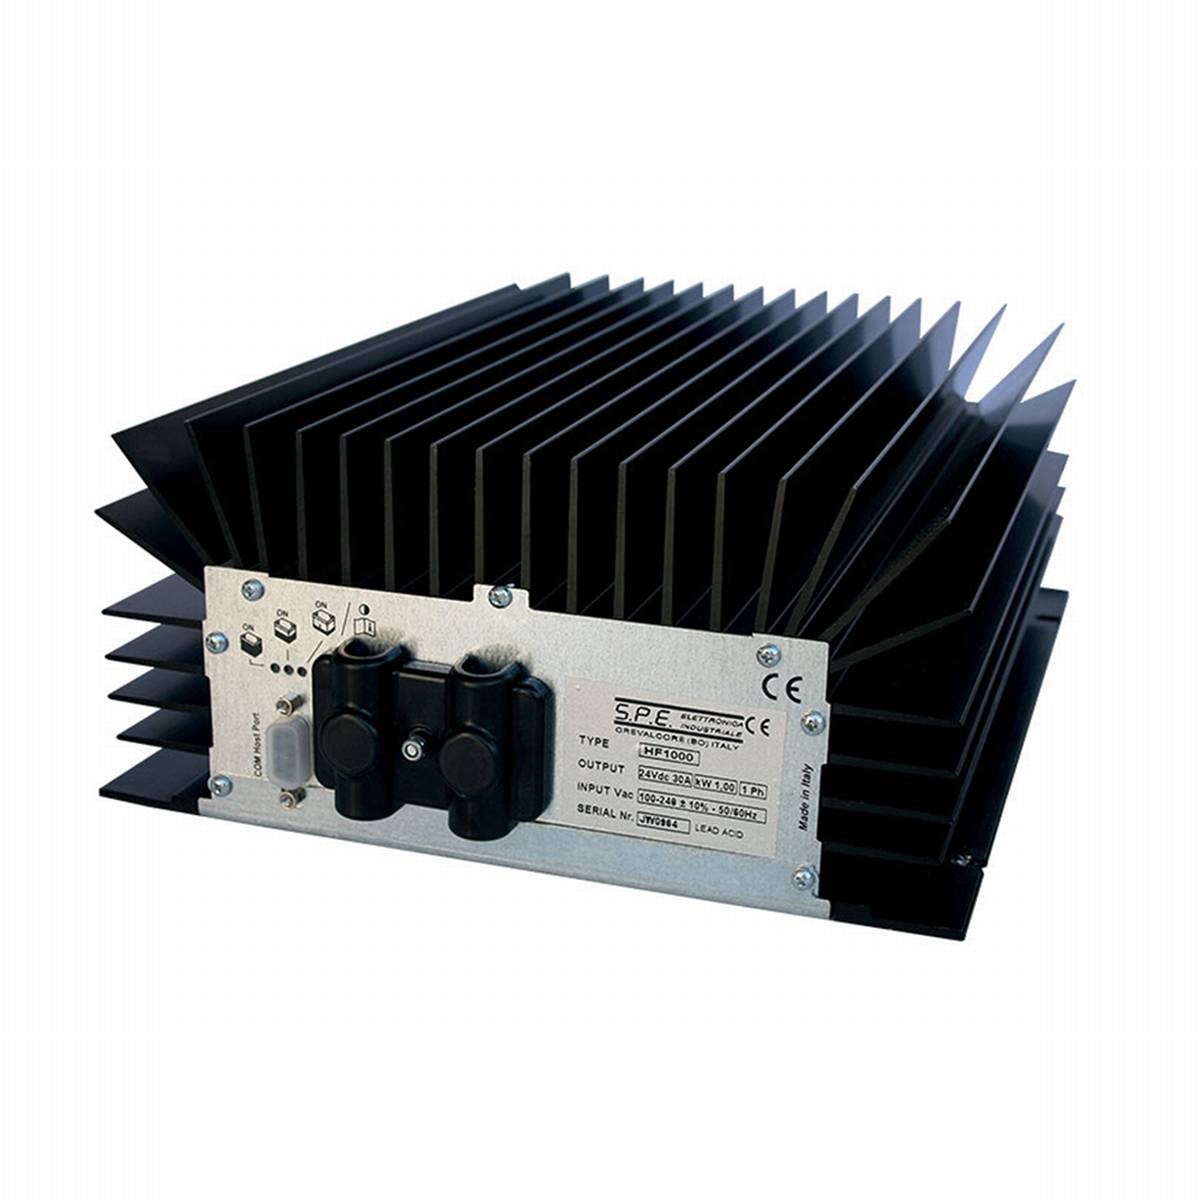 Q-Batterie risparmio energetico caricatore ad alta frequenza 48V 15A da S.P.E. Caricatore TORO 1000